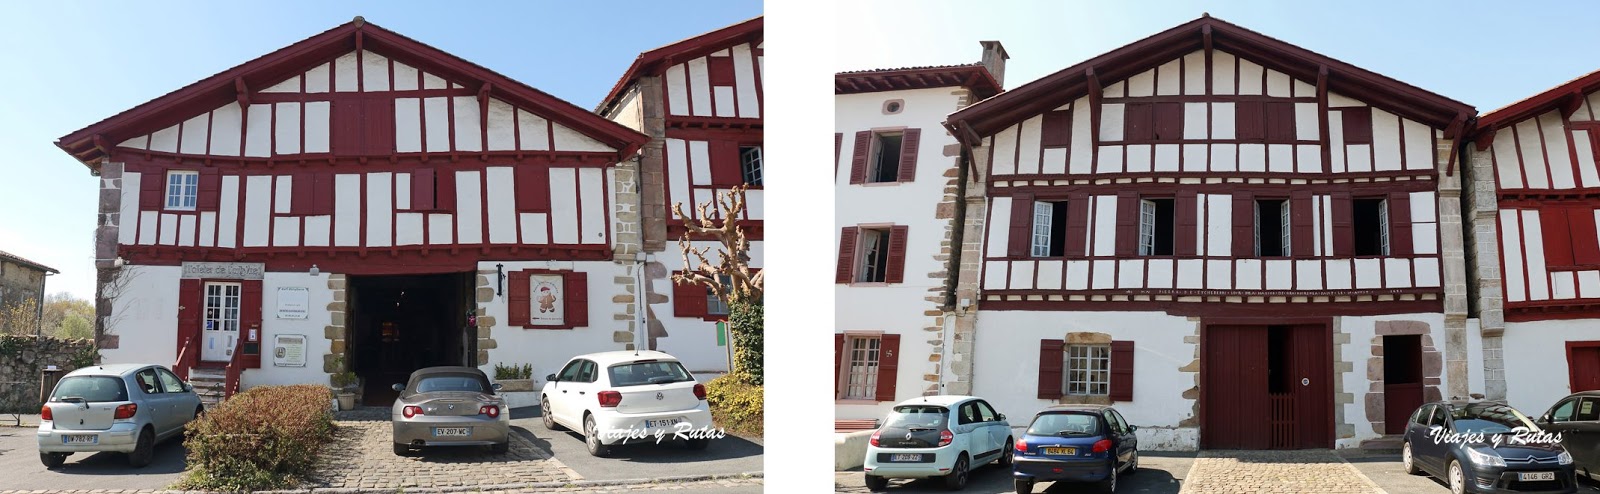 Casas de Ainhoa, Francia